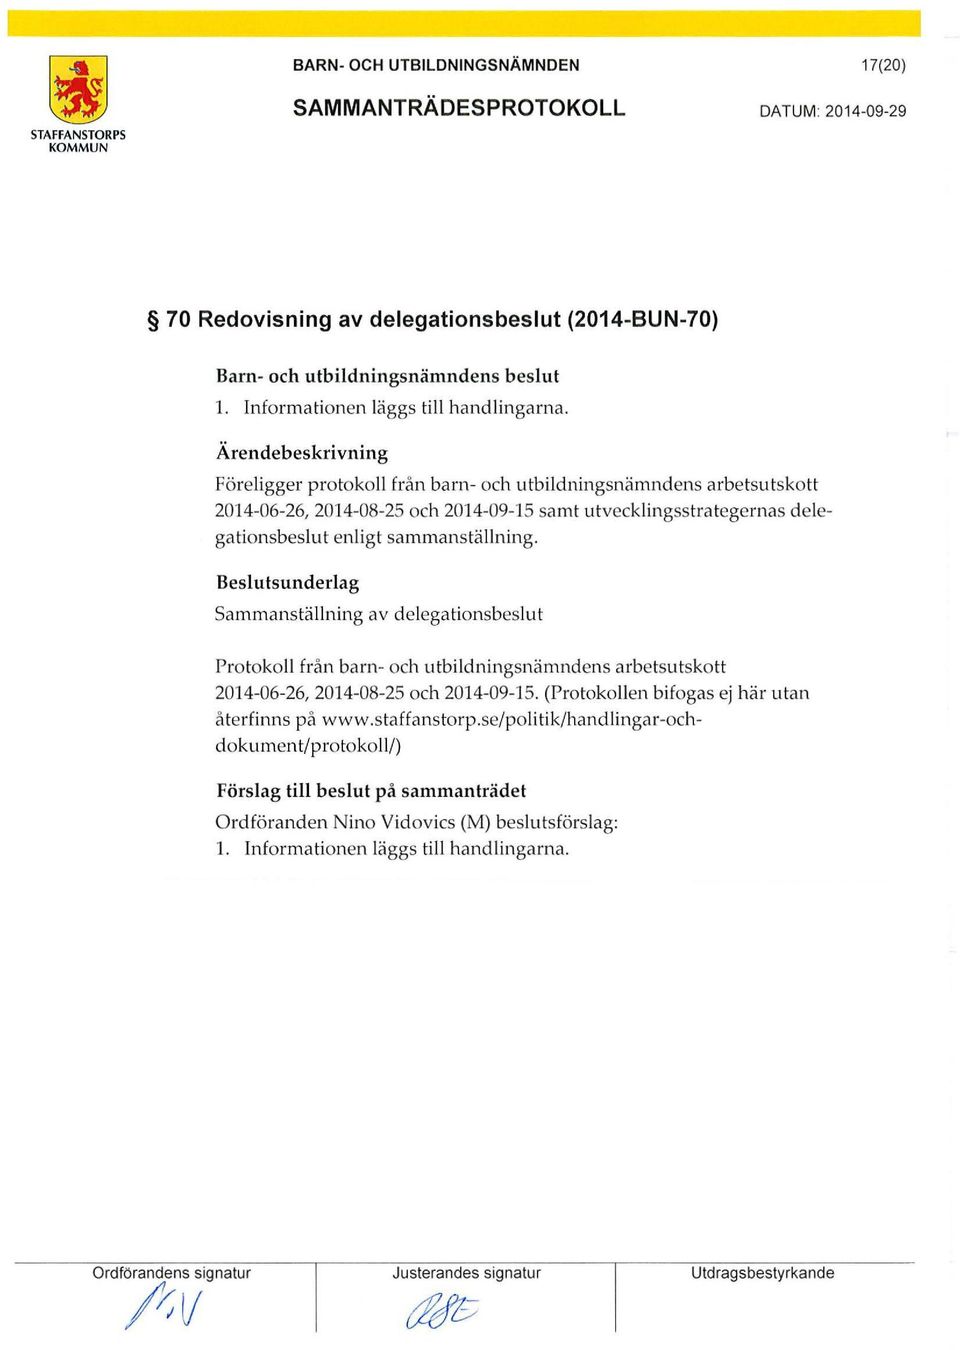 sammanställning. Sammanställning av delegationsbeslut Protokoll från barn- och utbildningsnämndens arbetsutskott 2014-06-26, 2014-08-25 och 2014-09-15.